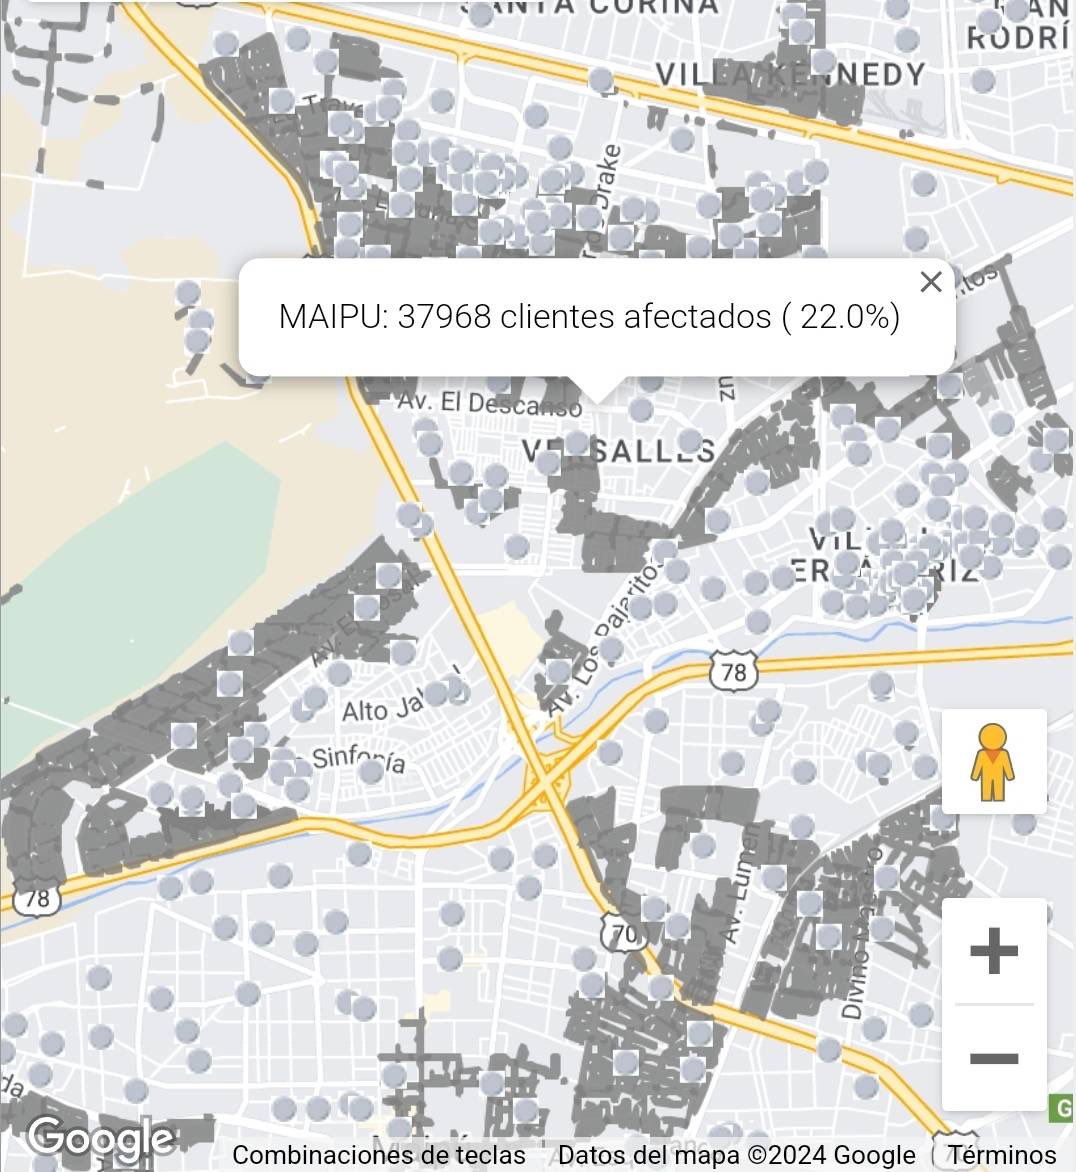 Maipú aún mantiene más de 37.000 clientes (hogares) sin suministro eléctrico. Lo que afecta no solo a viviendas, también el alumbrado público y semáforos de la comuna. Muchas familias están sin luz desde la mañana. Esperamos info y pronta reposición por parte de @EnelChile